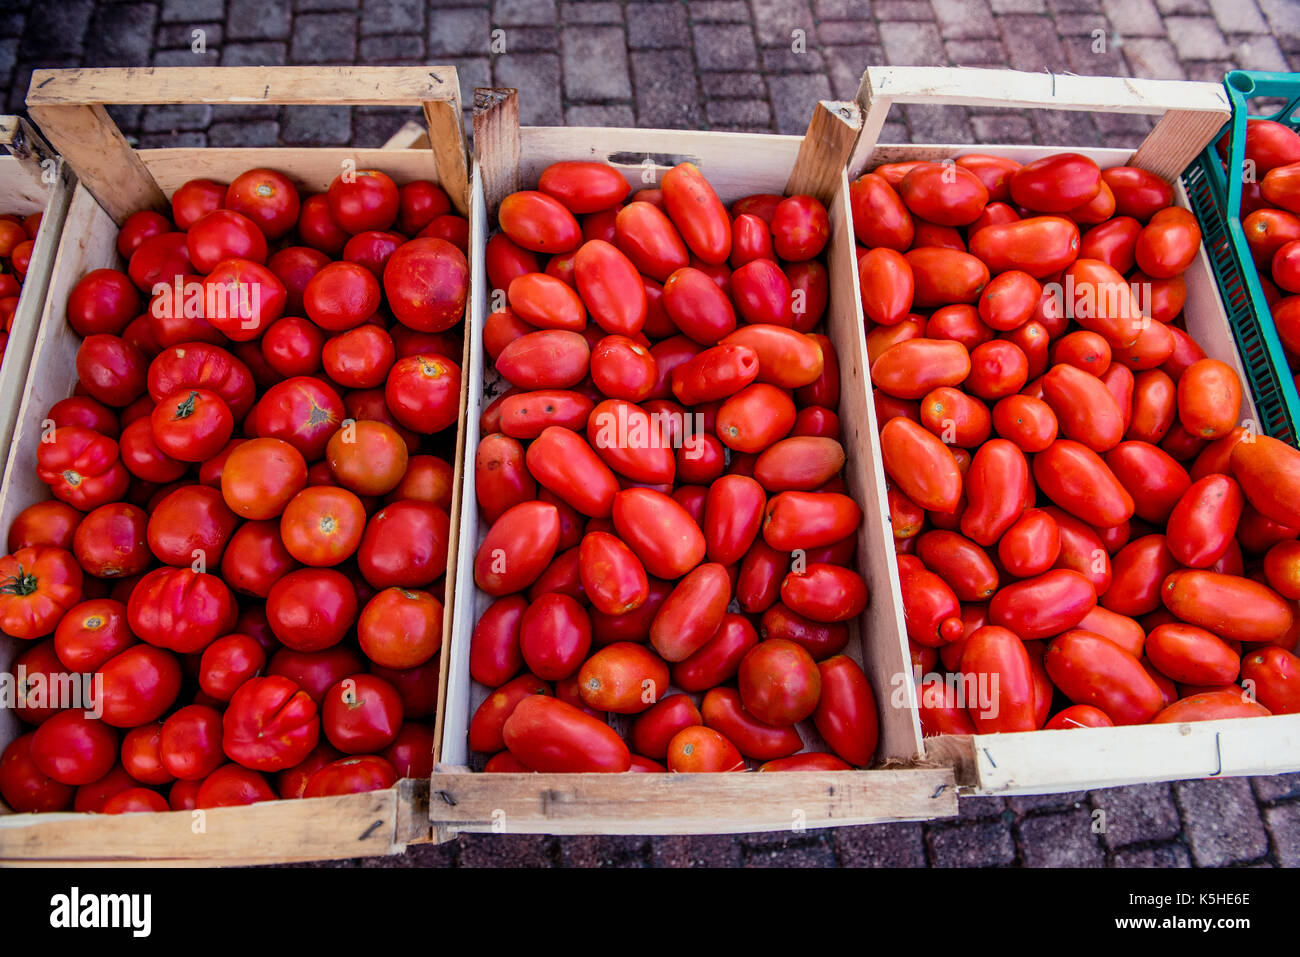 Pressione di stallo di mercato casse di legno pieno di diverse varietà di pomodori cimelio italiana e san marzano, vicino fino ad alto angolo di visione Foto Stock